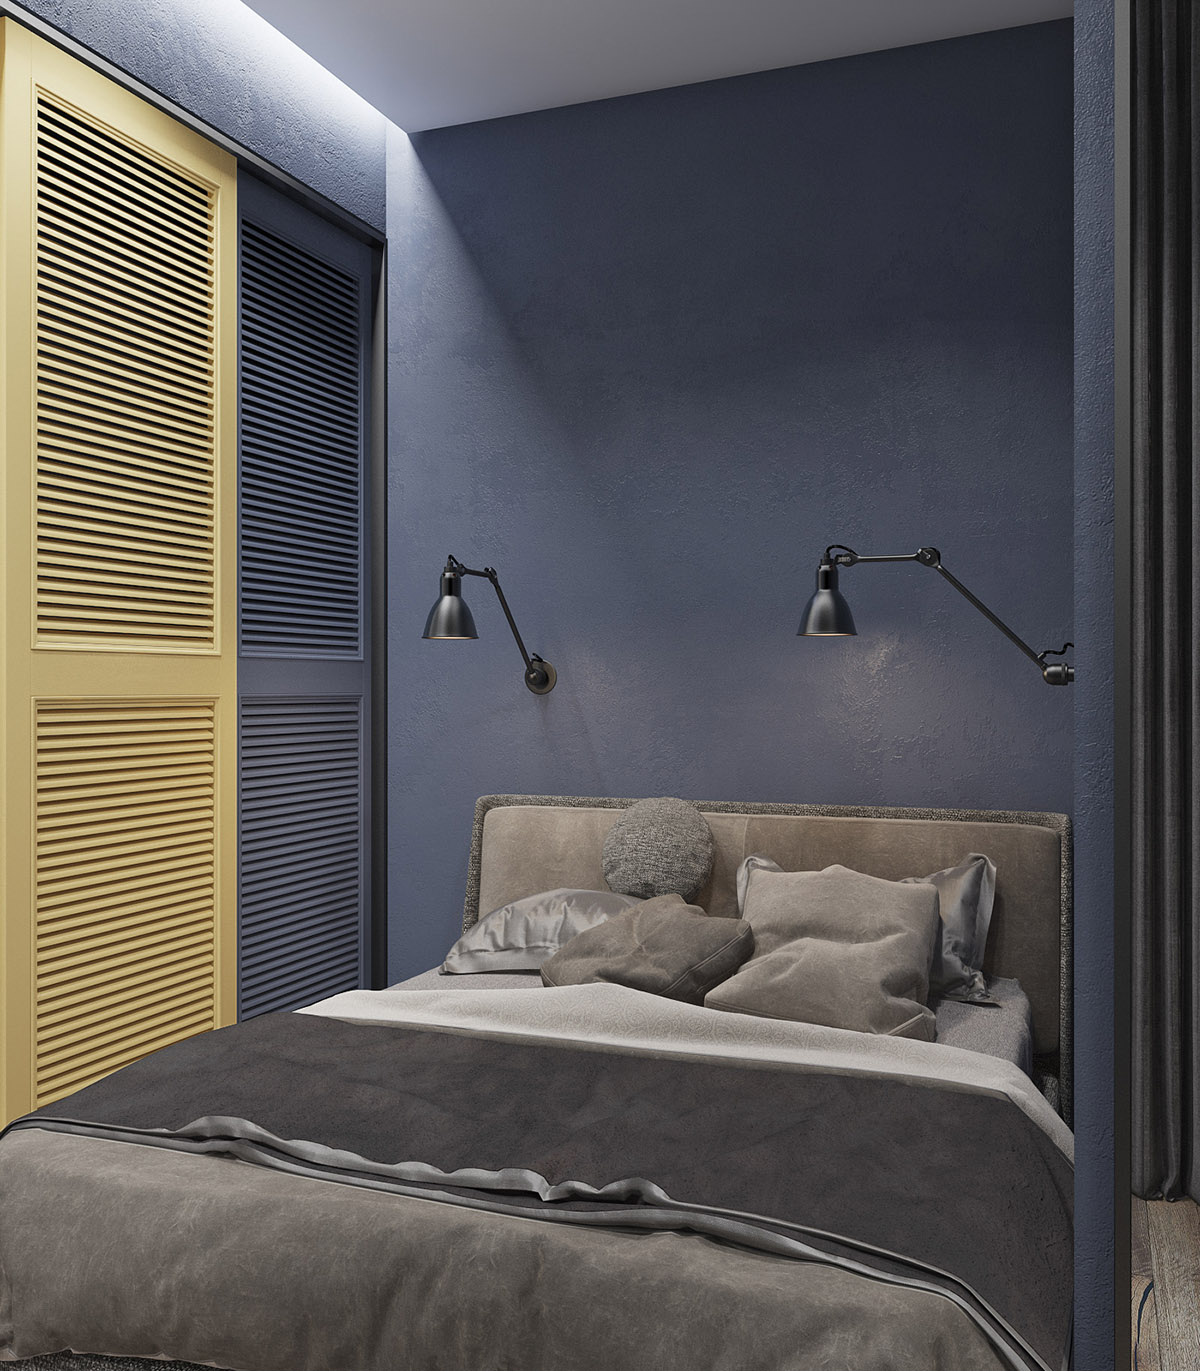 Đèn treo tường giải quyết vấn đề không gian hạn chế xung quanh giường